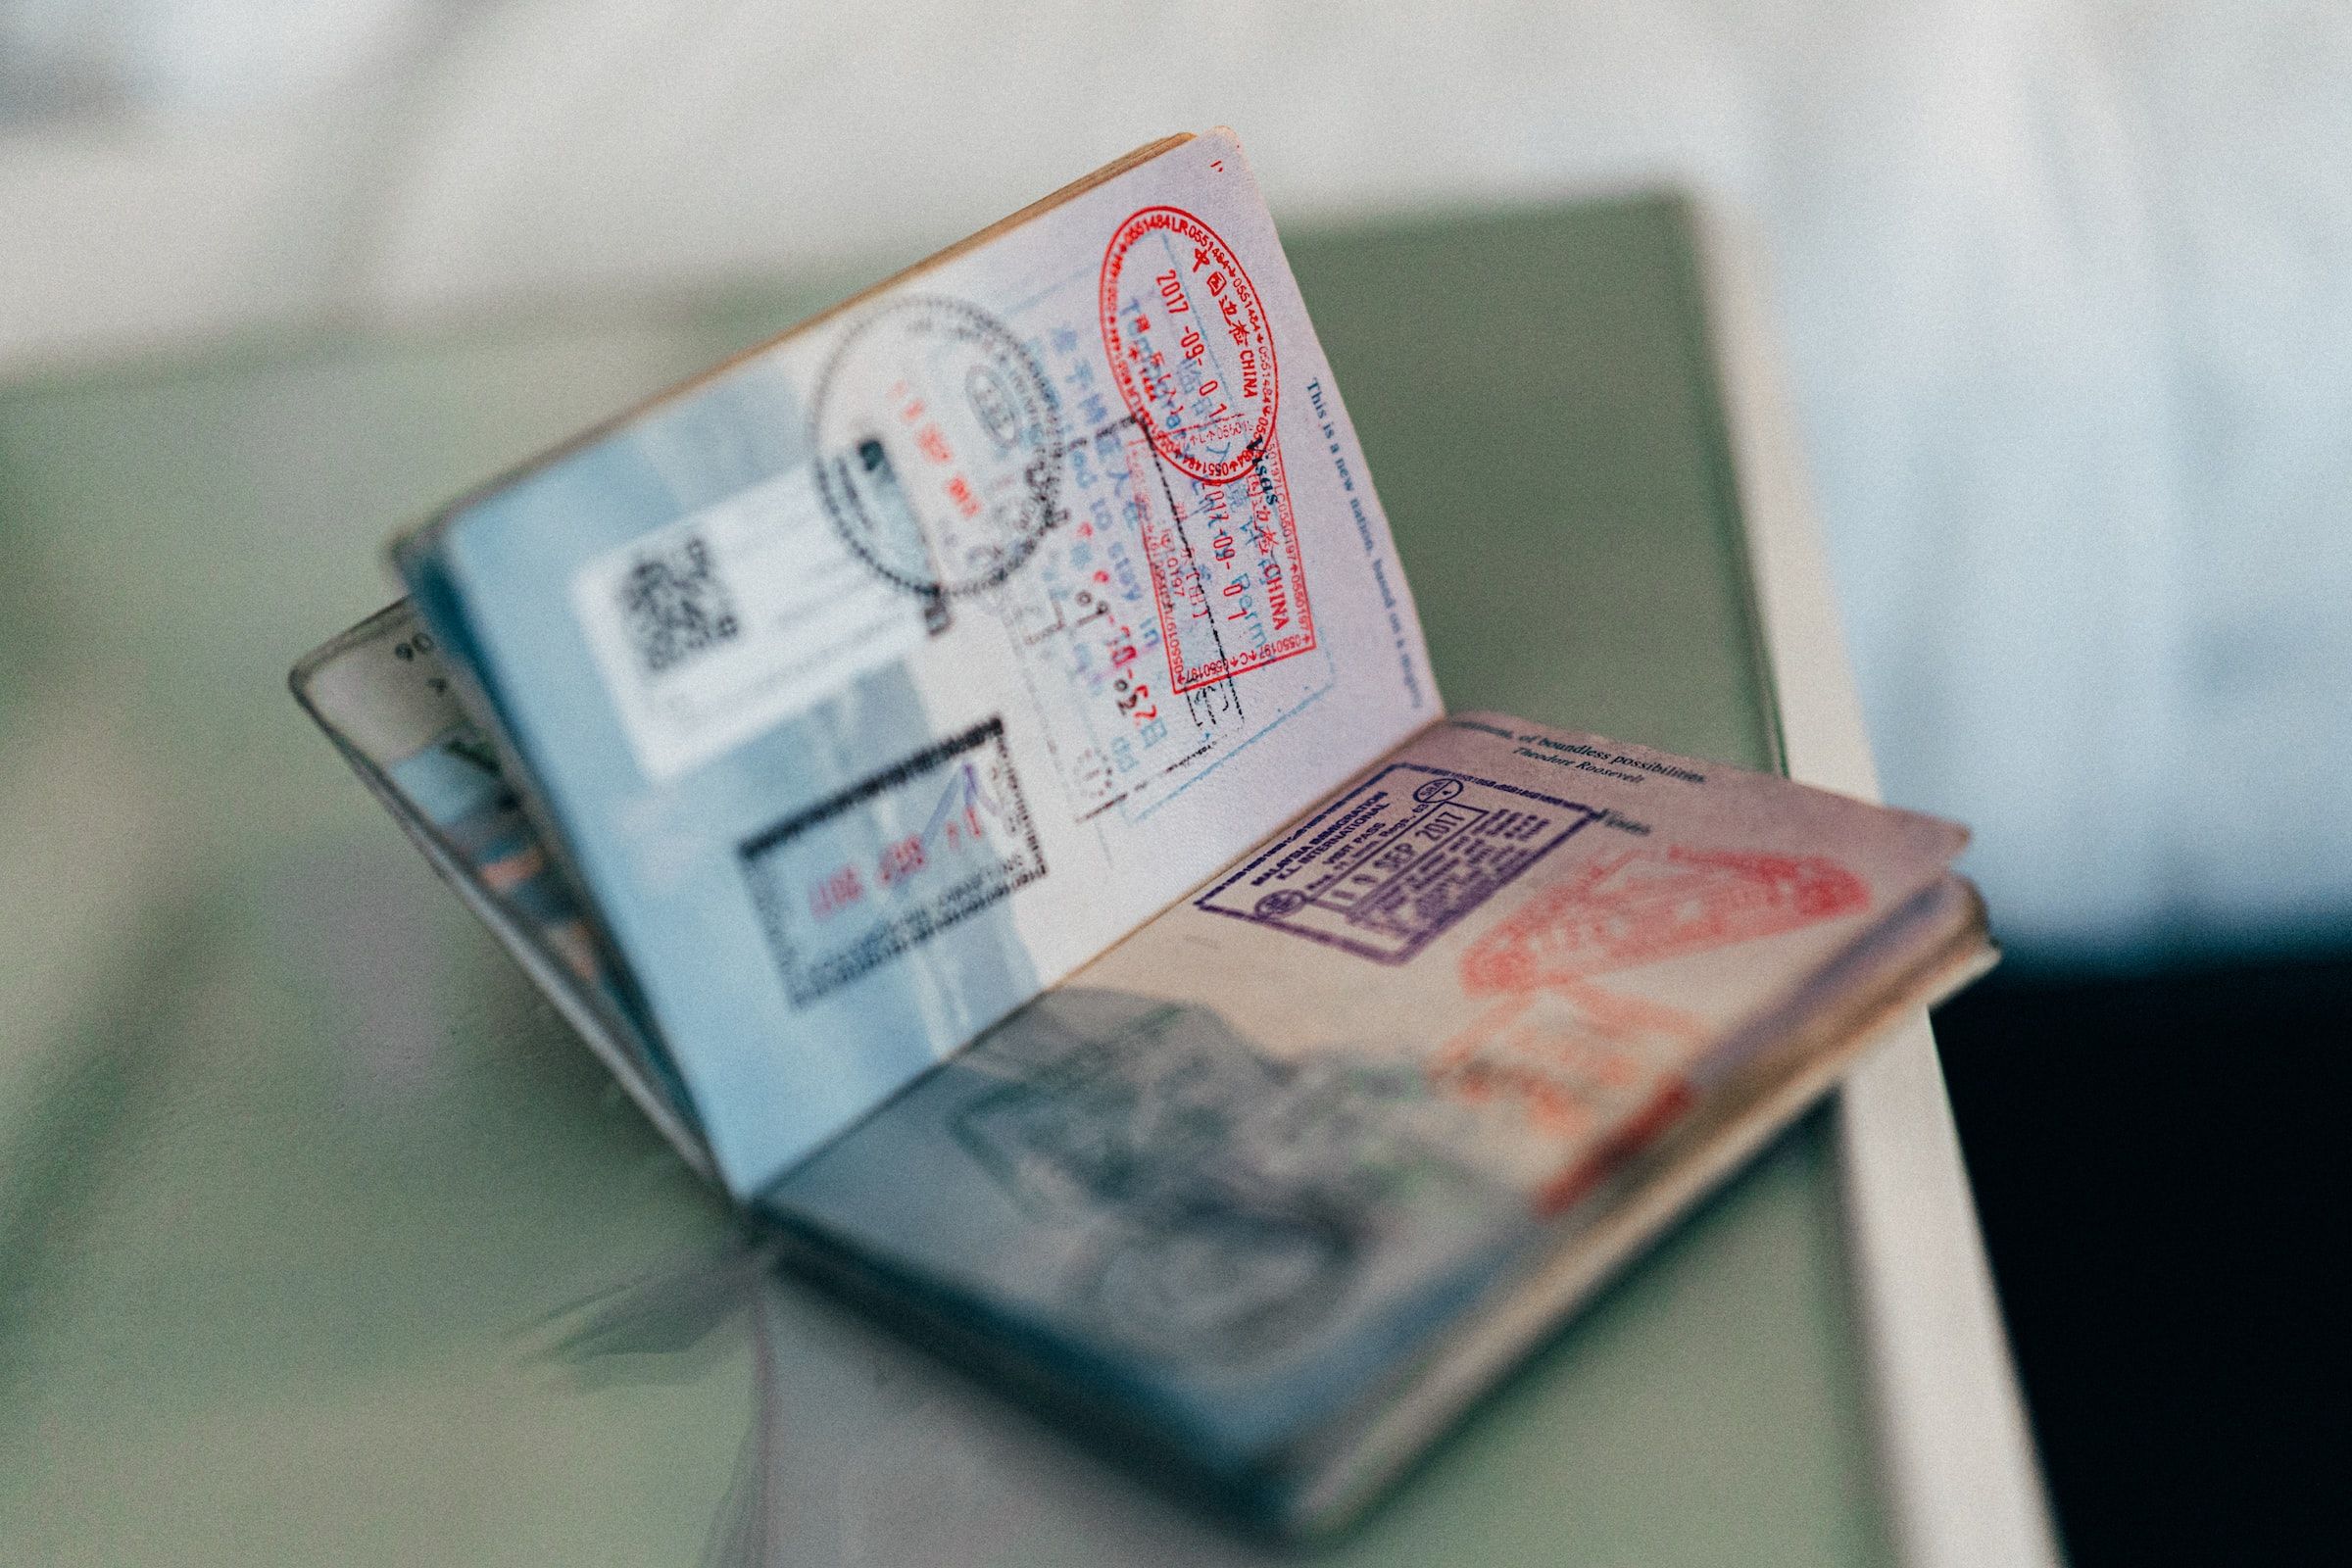 open passport with visa stamps